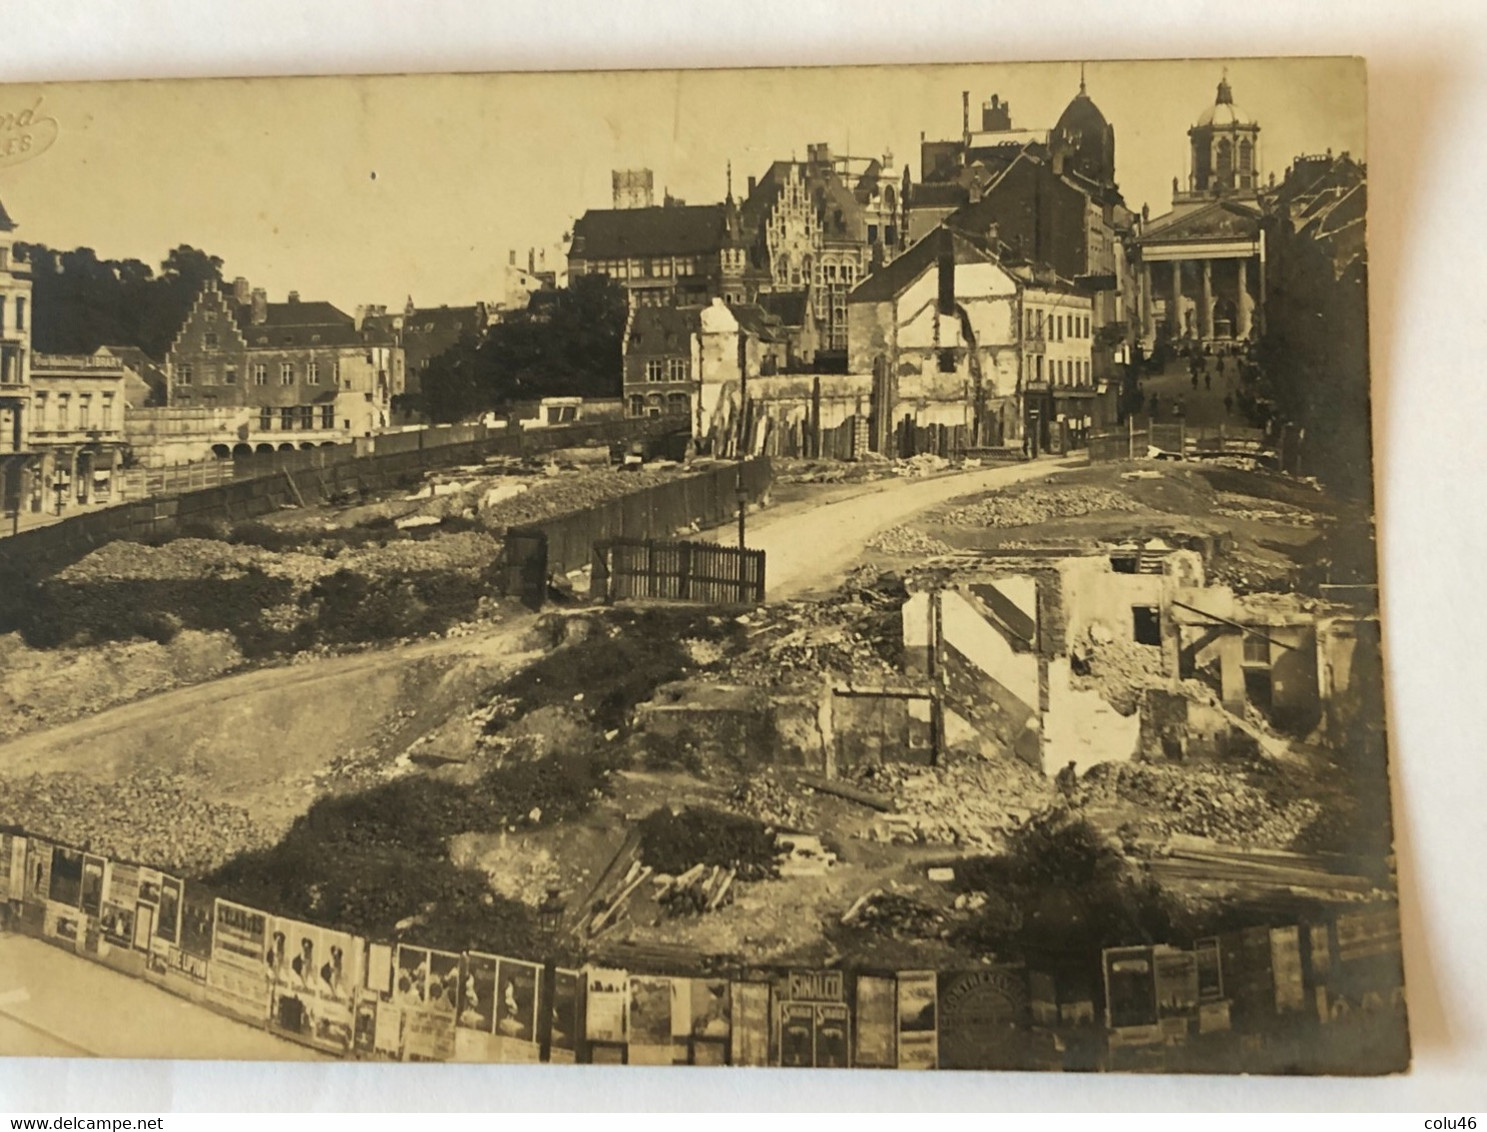 Rare carte postale fin 19e début 1900 travaux démolition quartier saint roch construction mont des arts